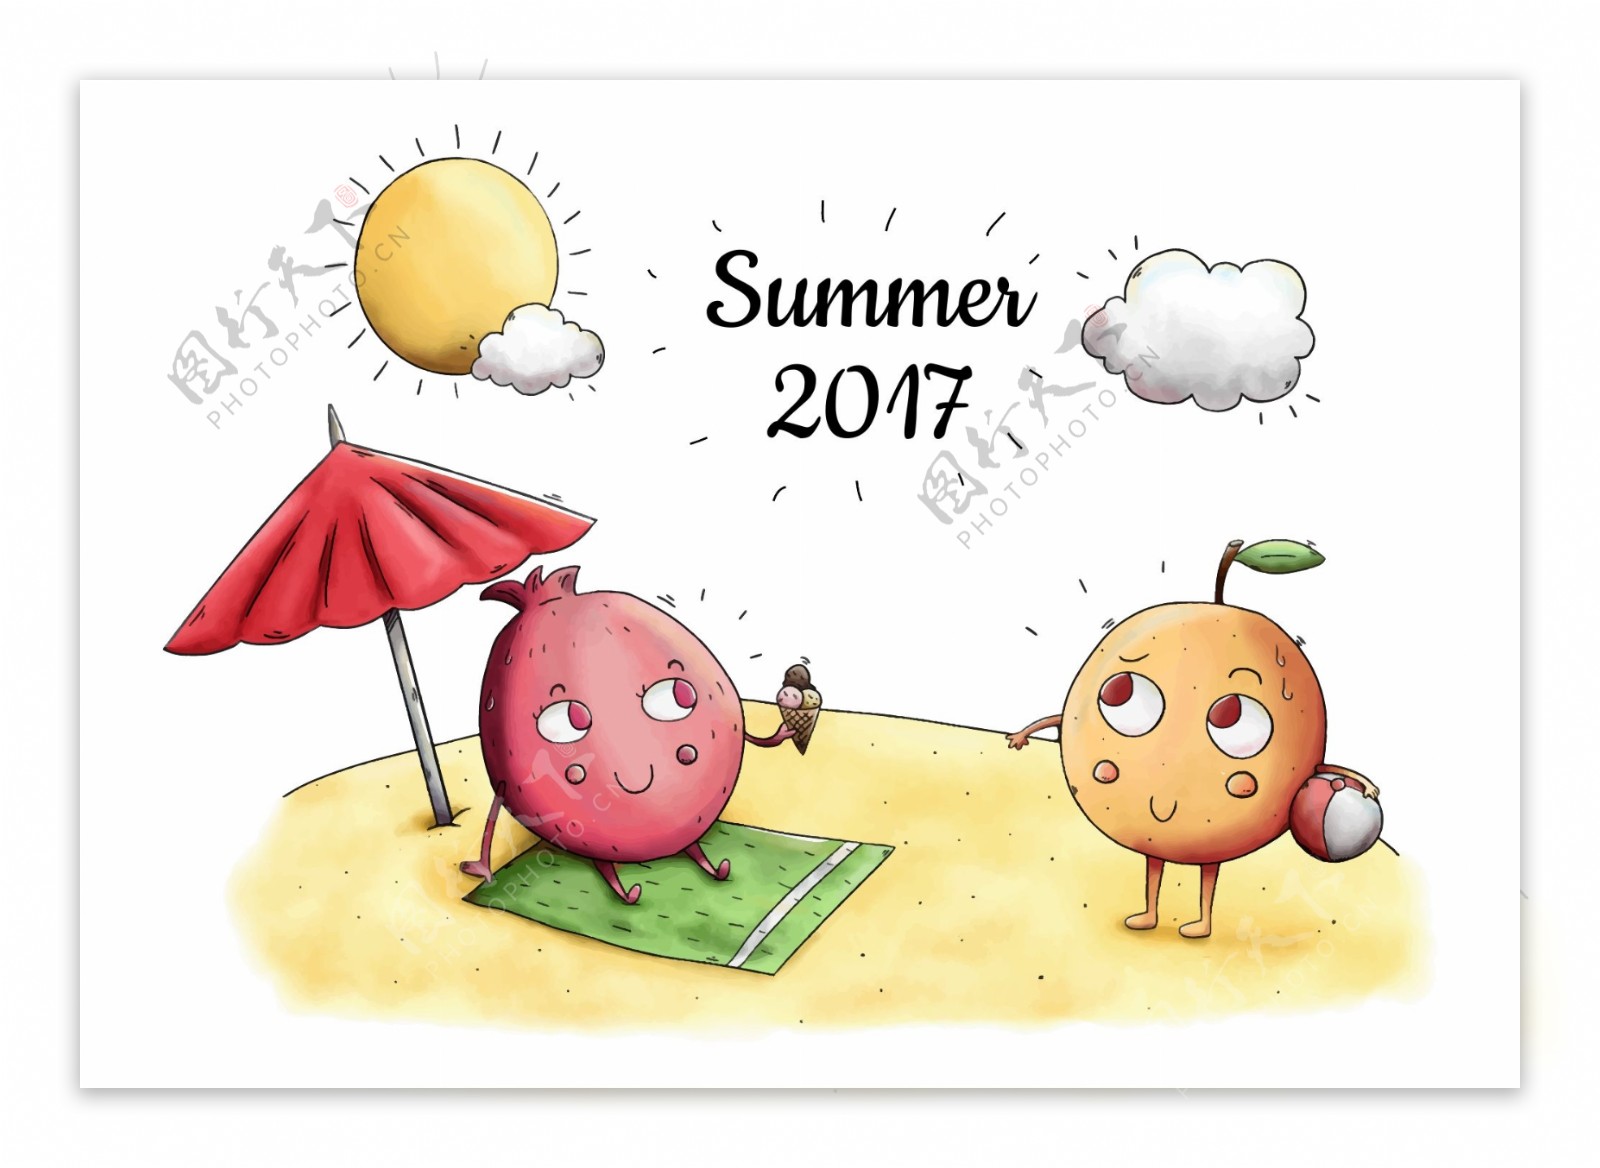 手绘可爱夏季水果插画